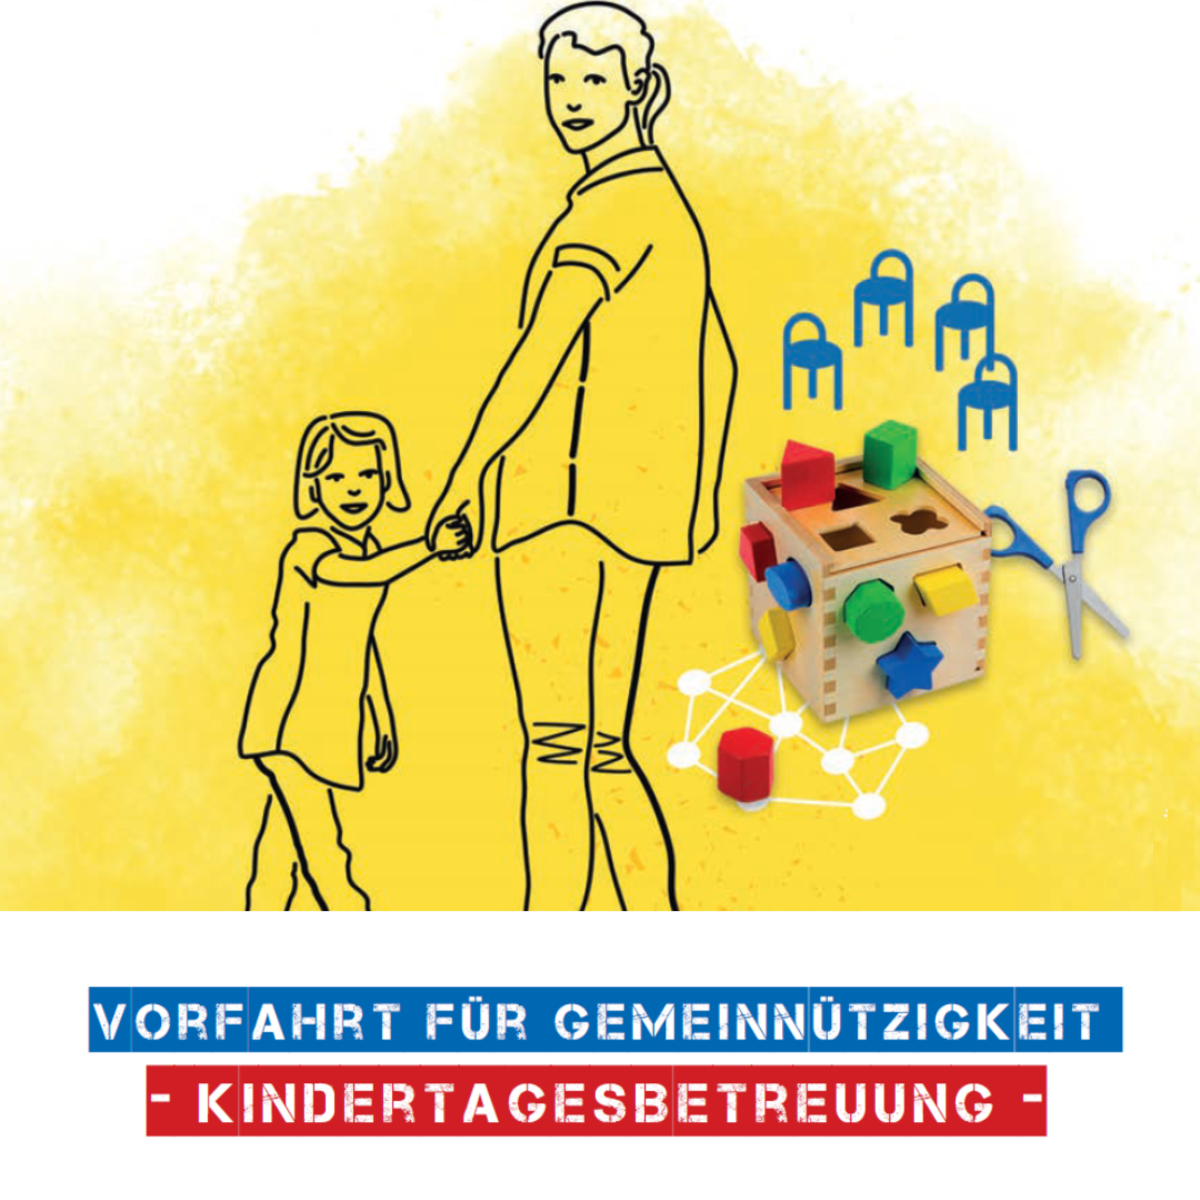 Grafik mit einre Mutter, die ihre Tochter an der Hand hält, daneben Kinderstühle, Bauklötze und eine Kinderschere. Dazu Text: Vorfahrt für Gemeinnützigkeit. Kindertagesbetreuung.